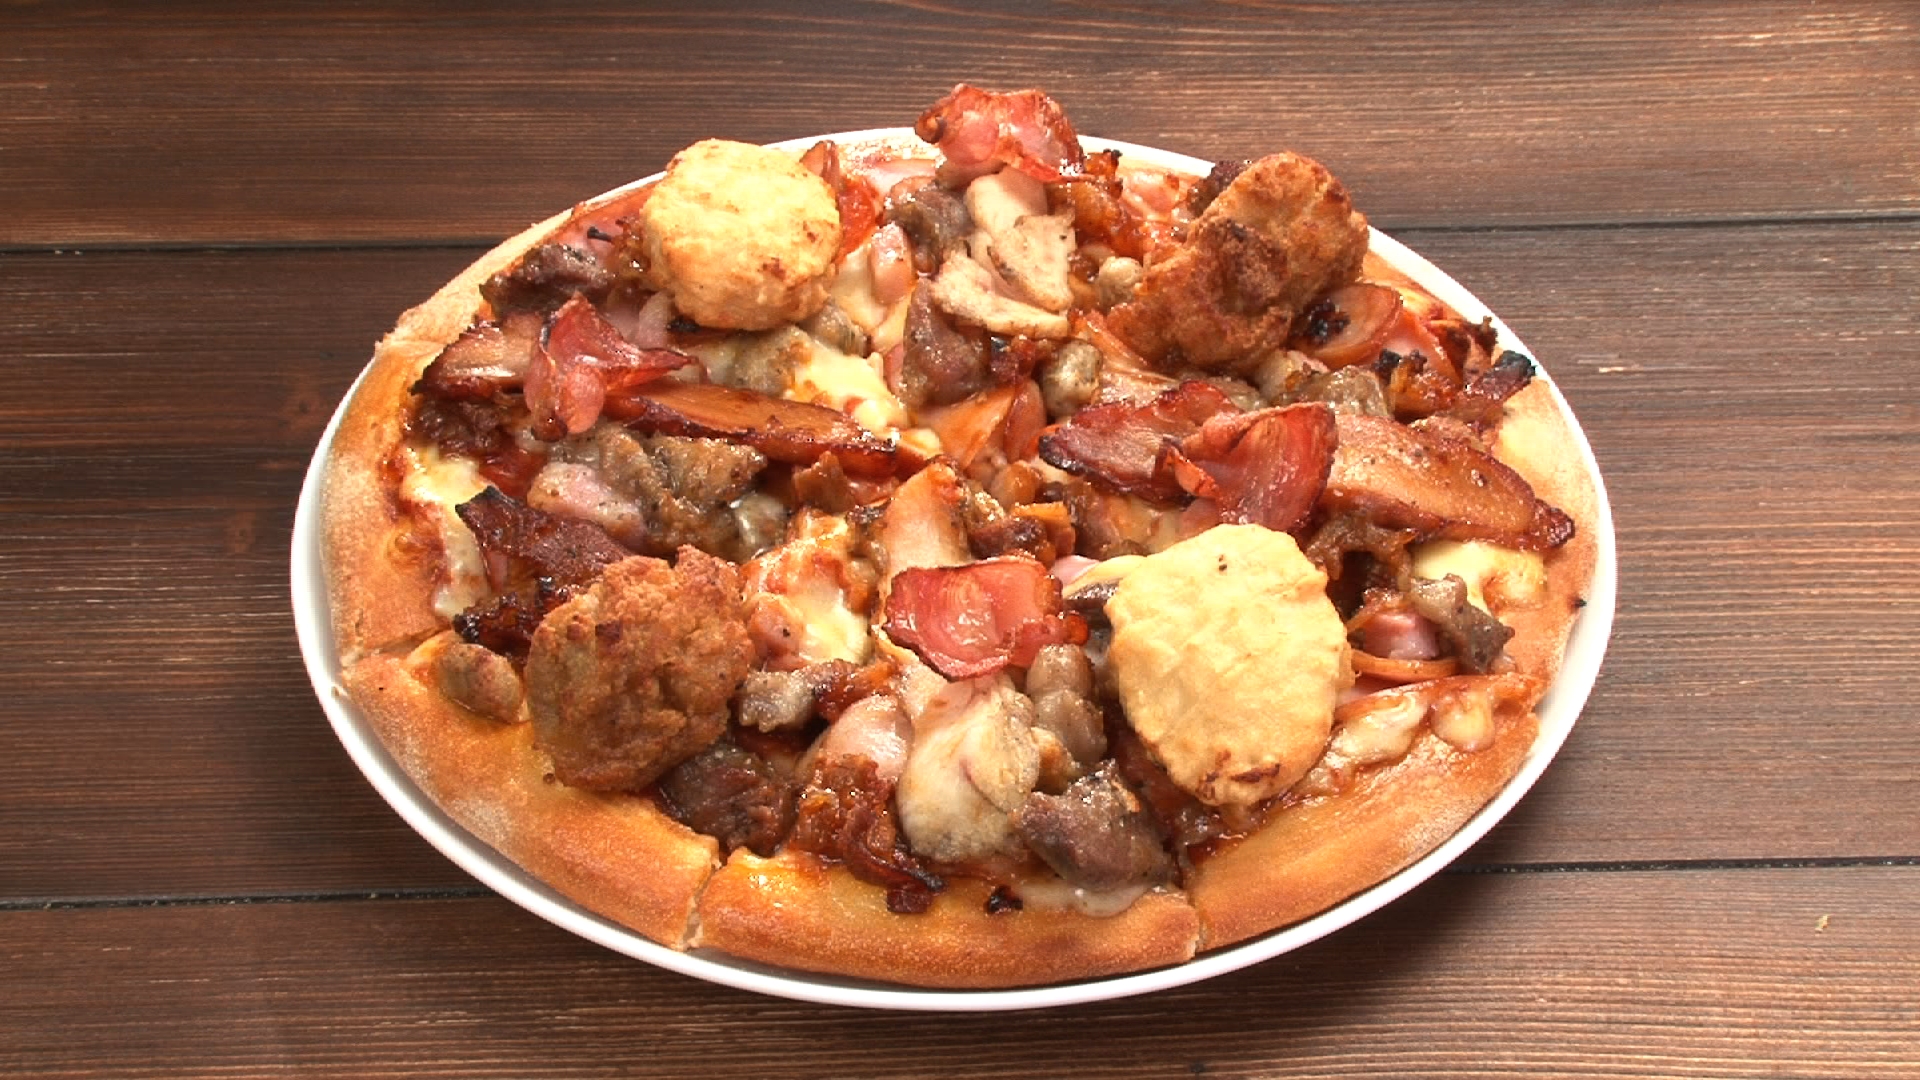 ドミノピザの没メニュー 幻の肉ピザ が 有吉弘行のダレトク のおかげで販売決定 なんと12種類の肉がトッピングされているんだよ Pouch ポーチ